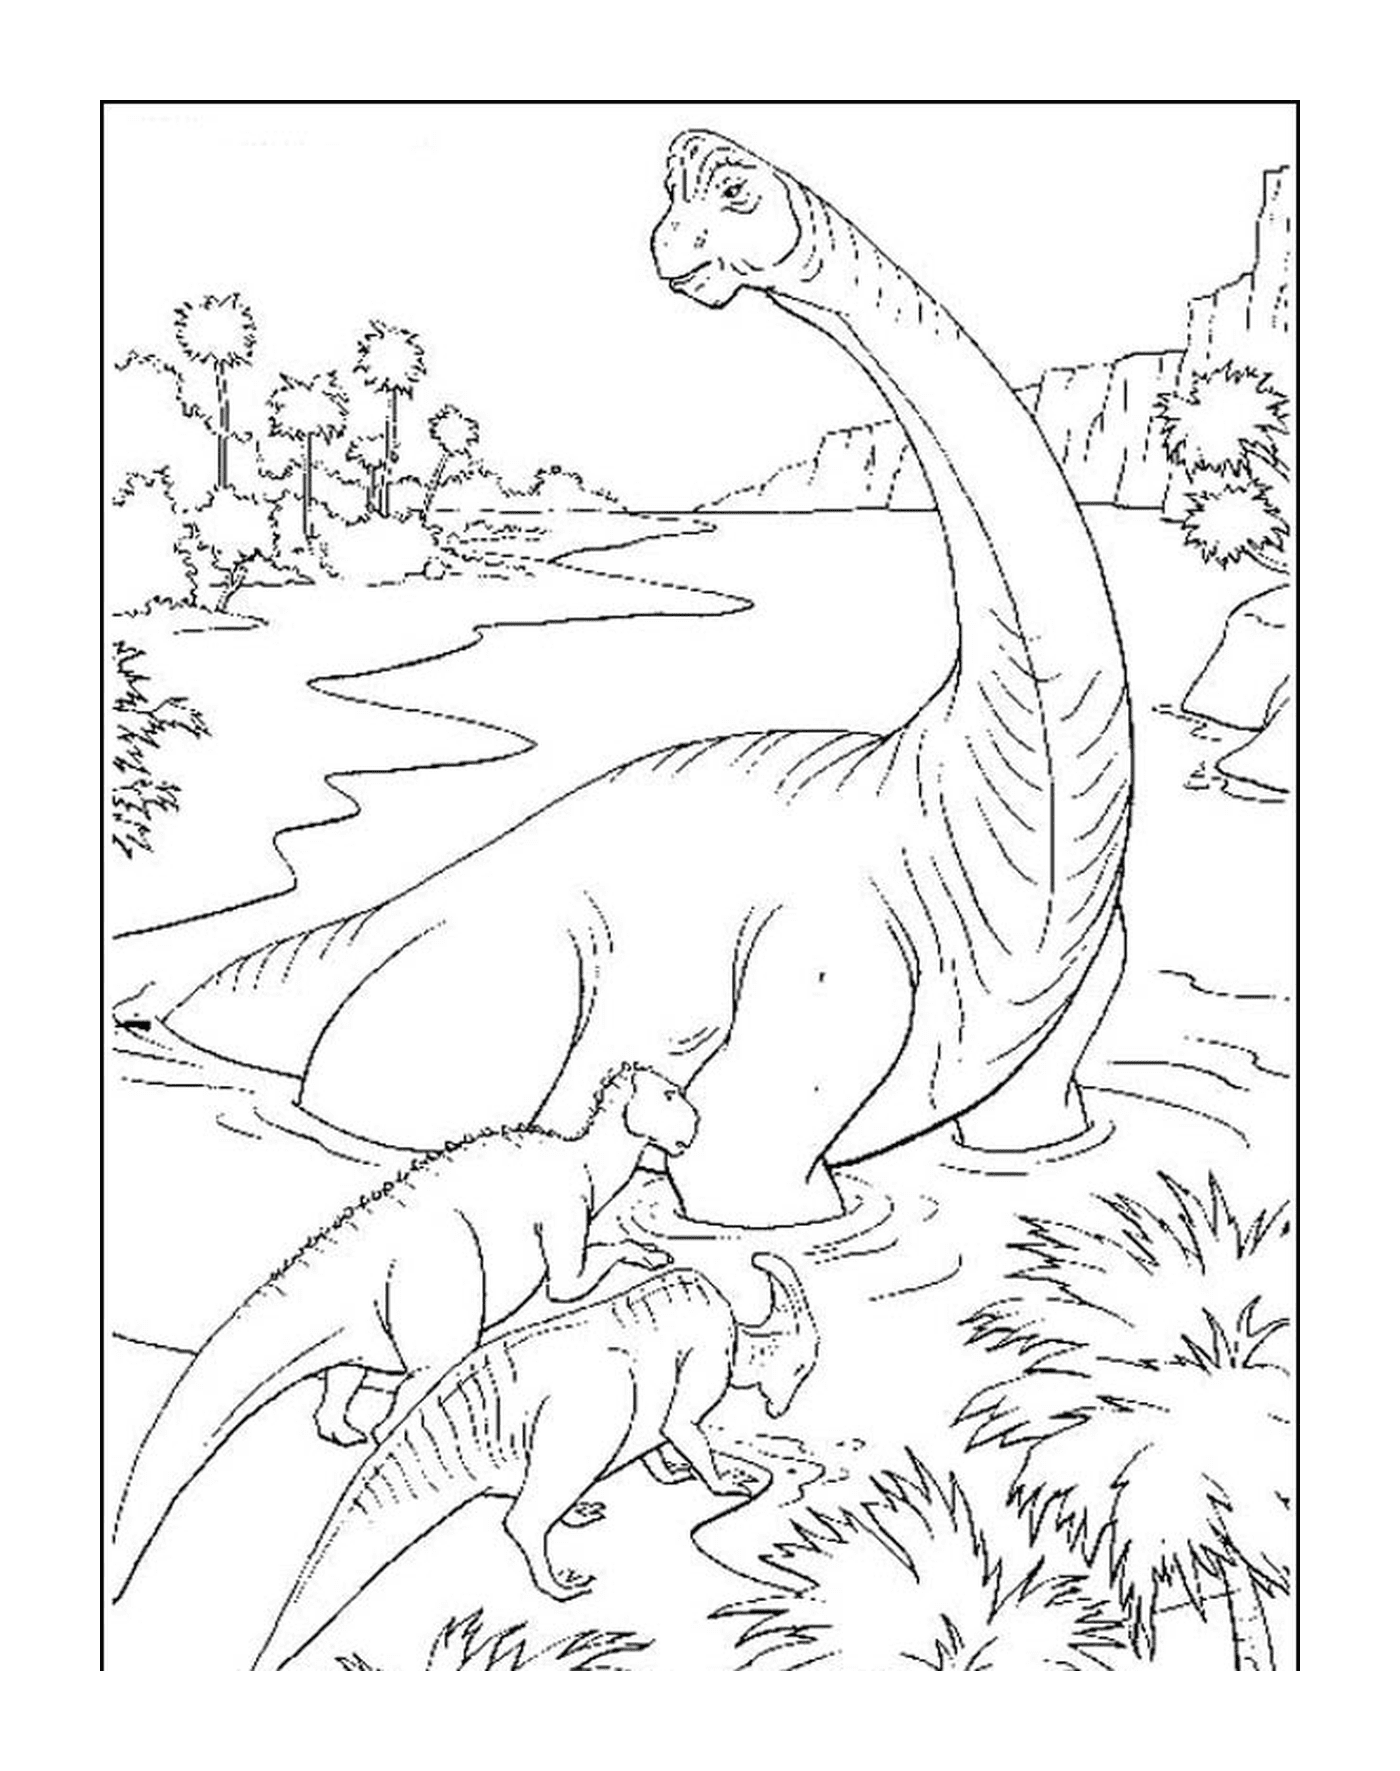  Erwachsener Dinosaurier und ihr bezauberndes Baby 